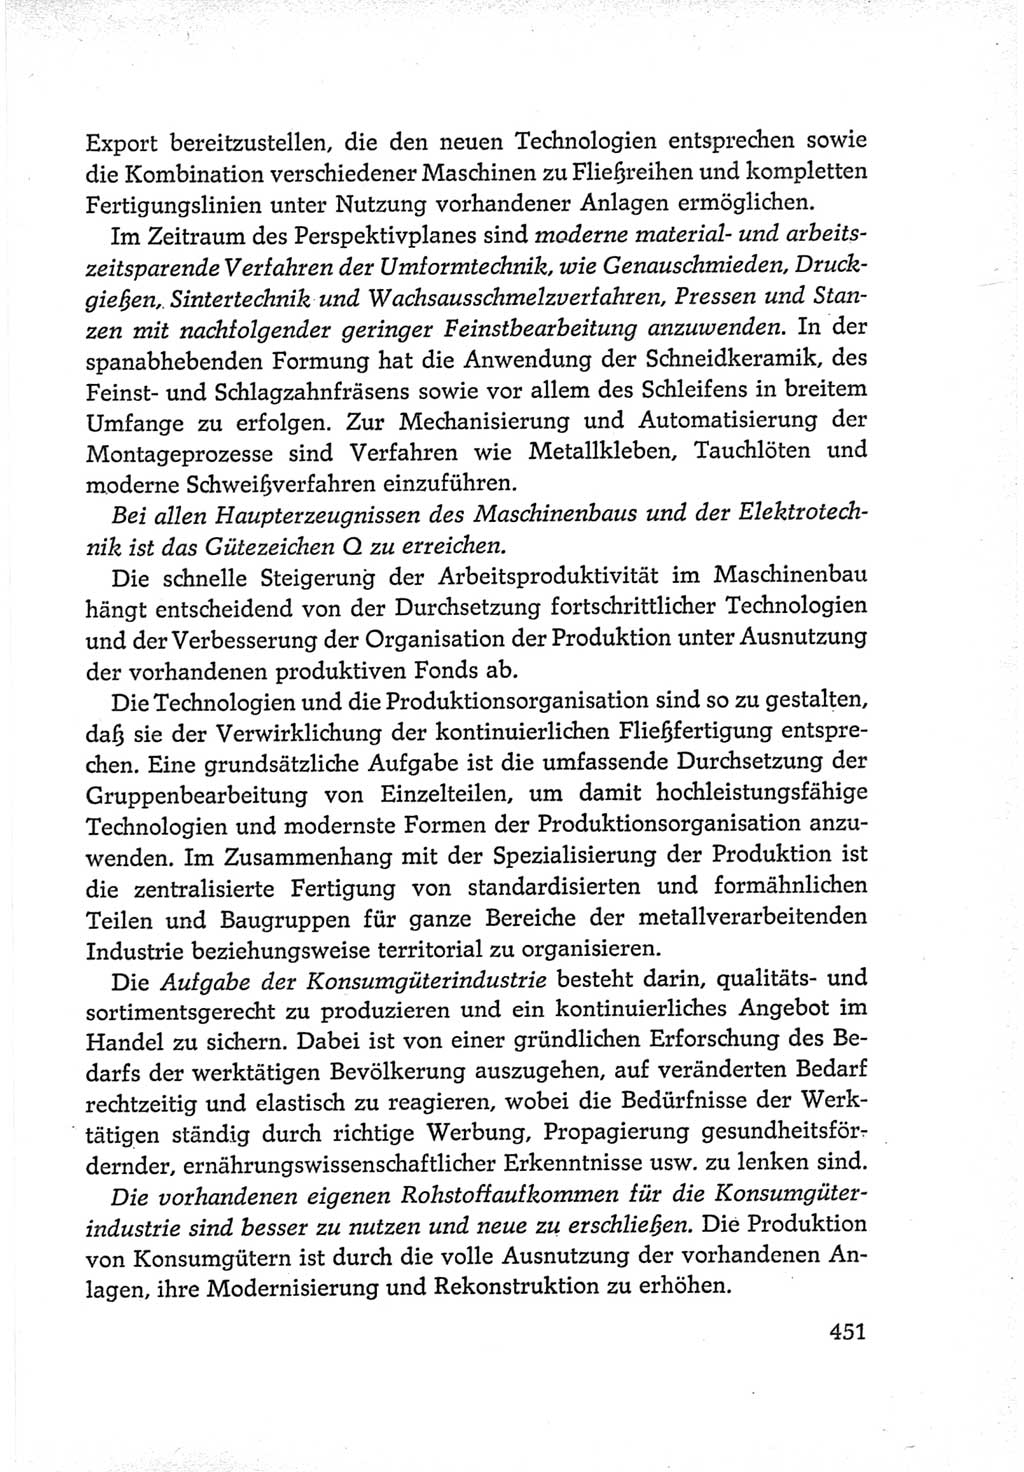 Protokoll der Verhandlungen des Ⅵ. Parteitages der Sozialistischen Einheitspartei Deutschlands (SED) [Deutsche Demokratische Republik (DDR)] 1963, Band Ⅳ, Seite 451 (Prot. Verh. Ⅵ. PT SED DDR 1963, Bd. Ⅳ, S. 451)